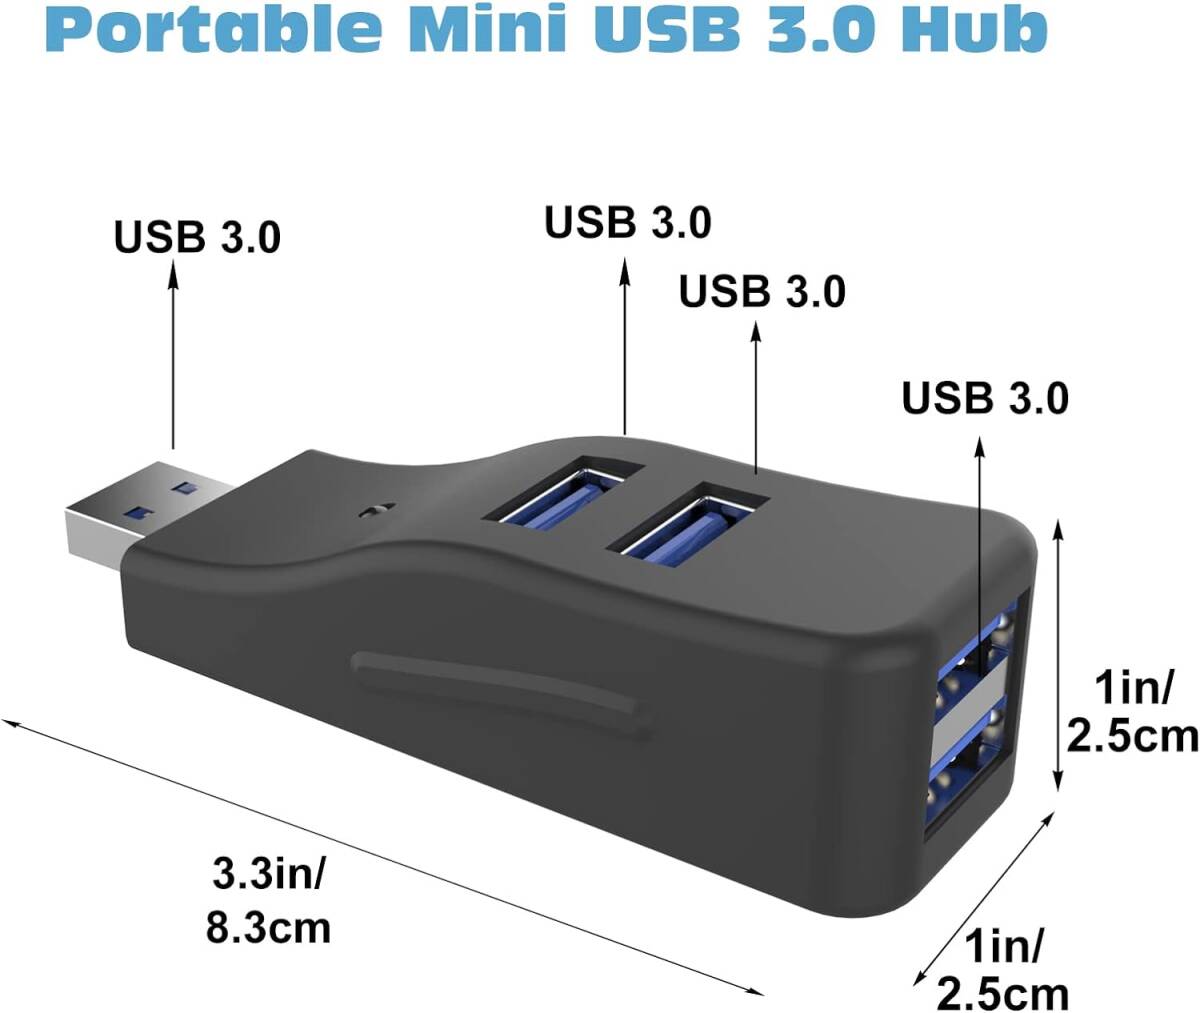 USB 3.0ハブ 4ポート スプリッター LED付き コンボハブ 超小型 バスパワー ミニUSBポート 高速データ転送 軽量 携帯便利 直挿し コンパクトの画像2